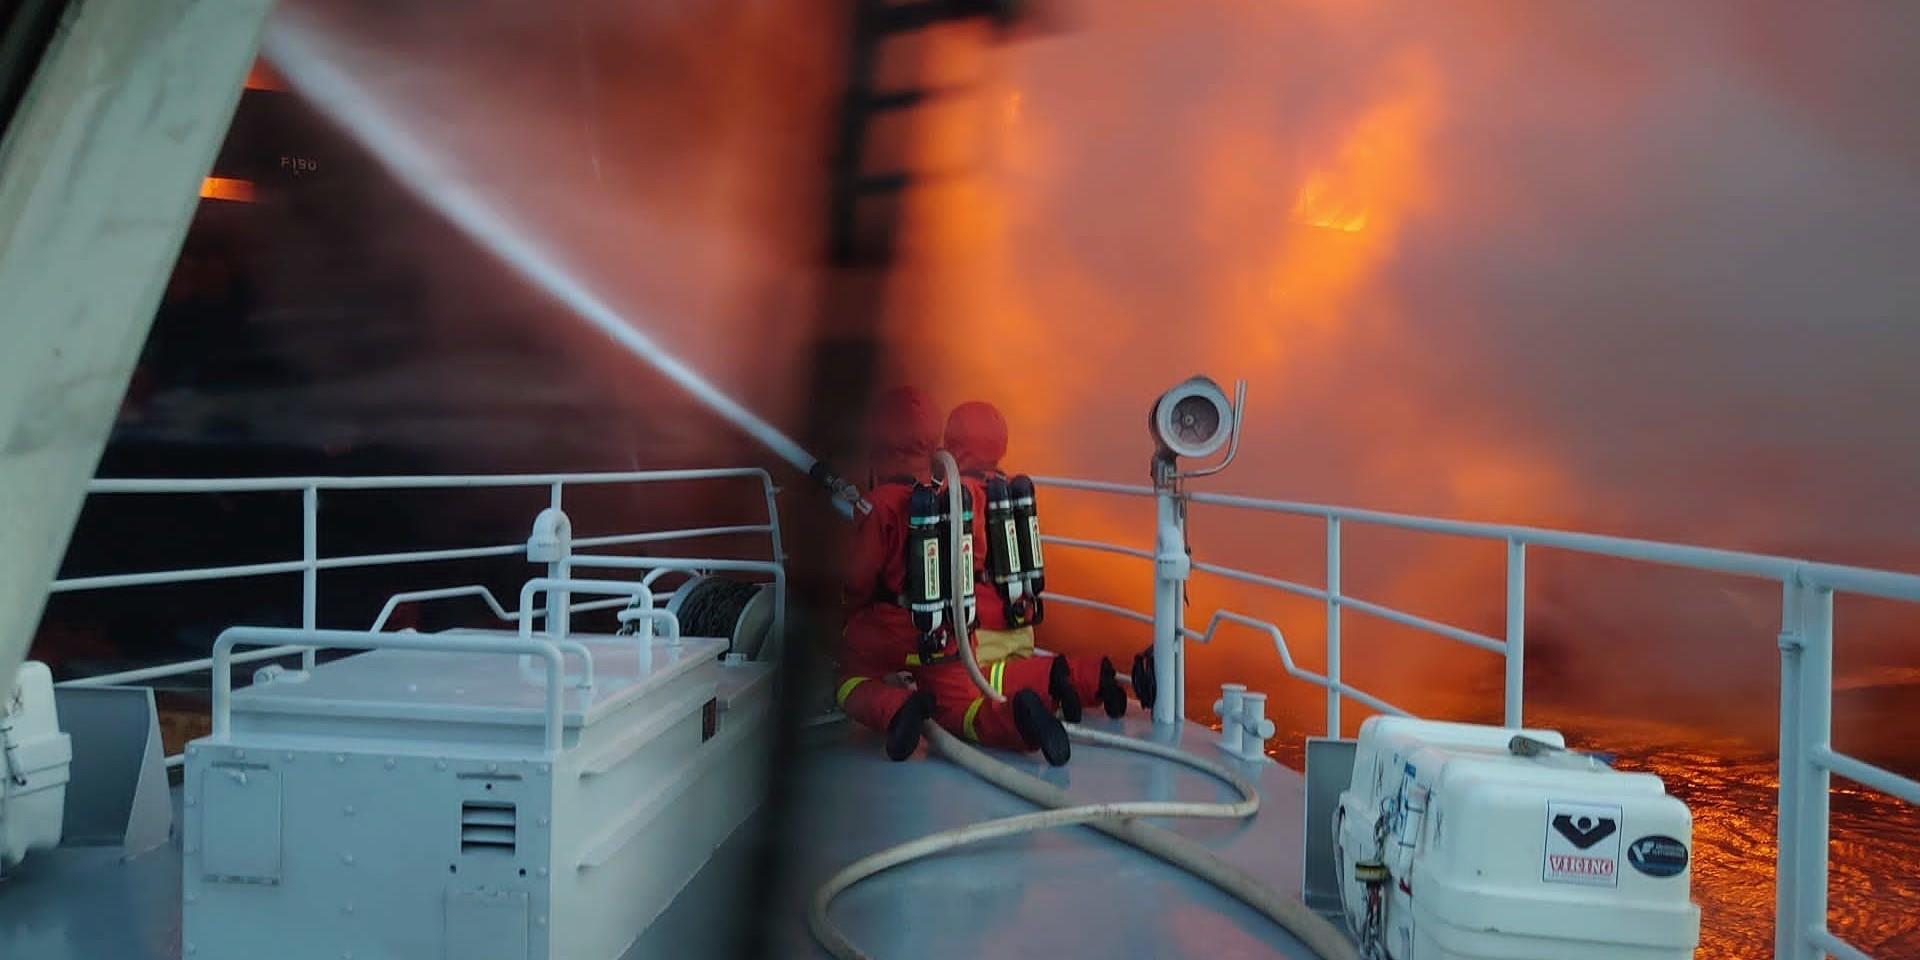 Det svåra och komplicerade släckningsarbetet av branden på fartyget fortsätter.